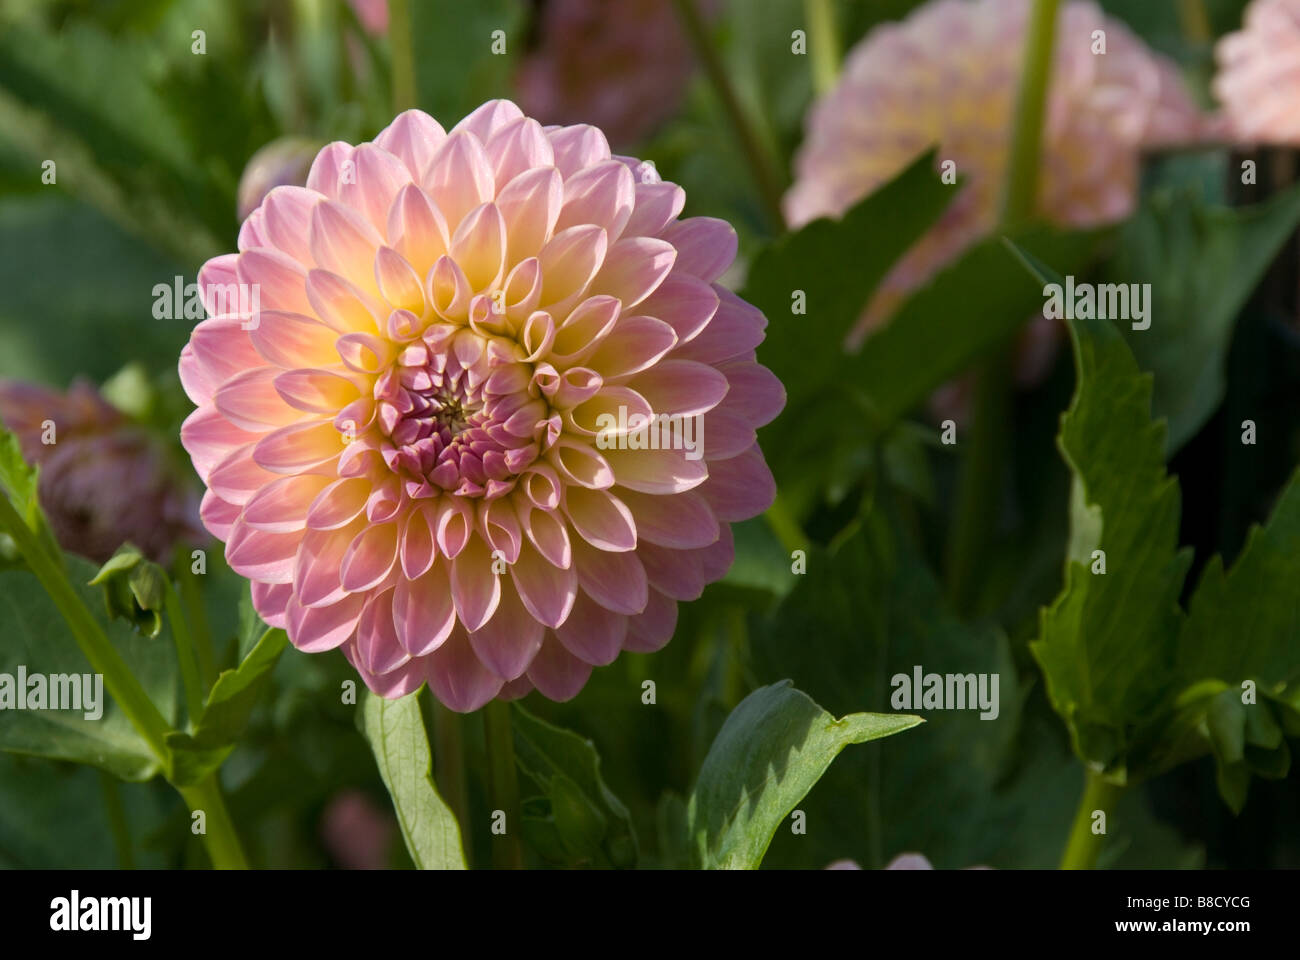 Stock Foto von einem rosa Dahlie Blume im Garten Stockfoto